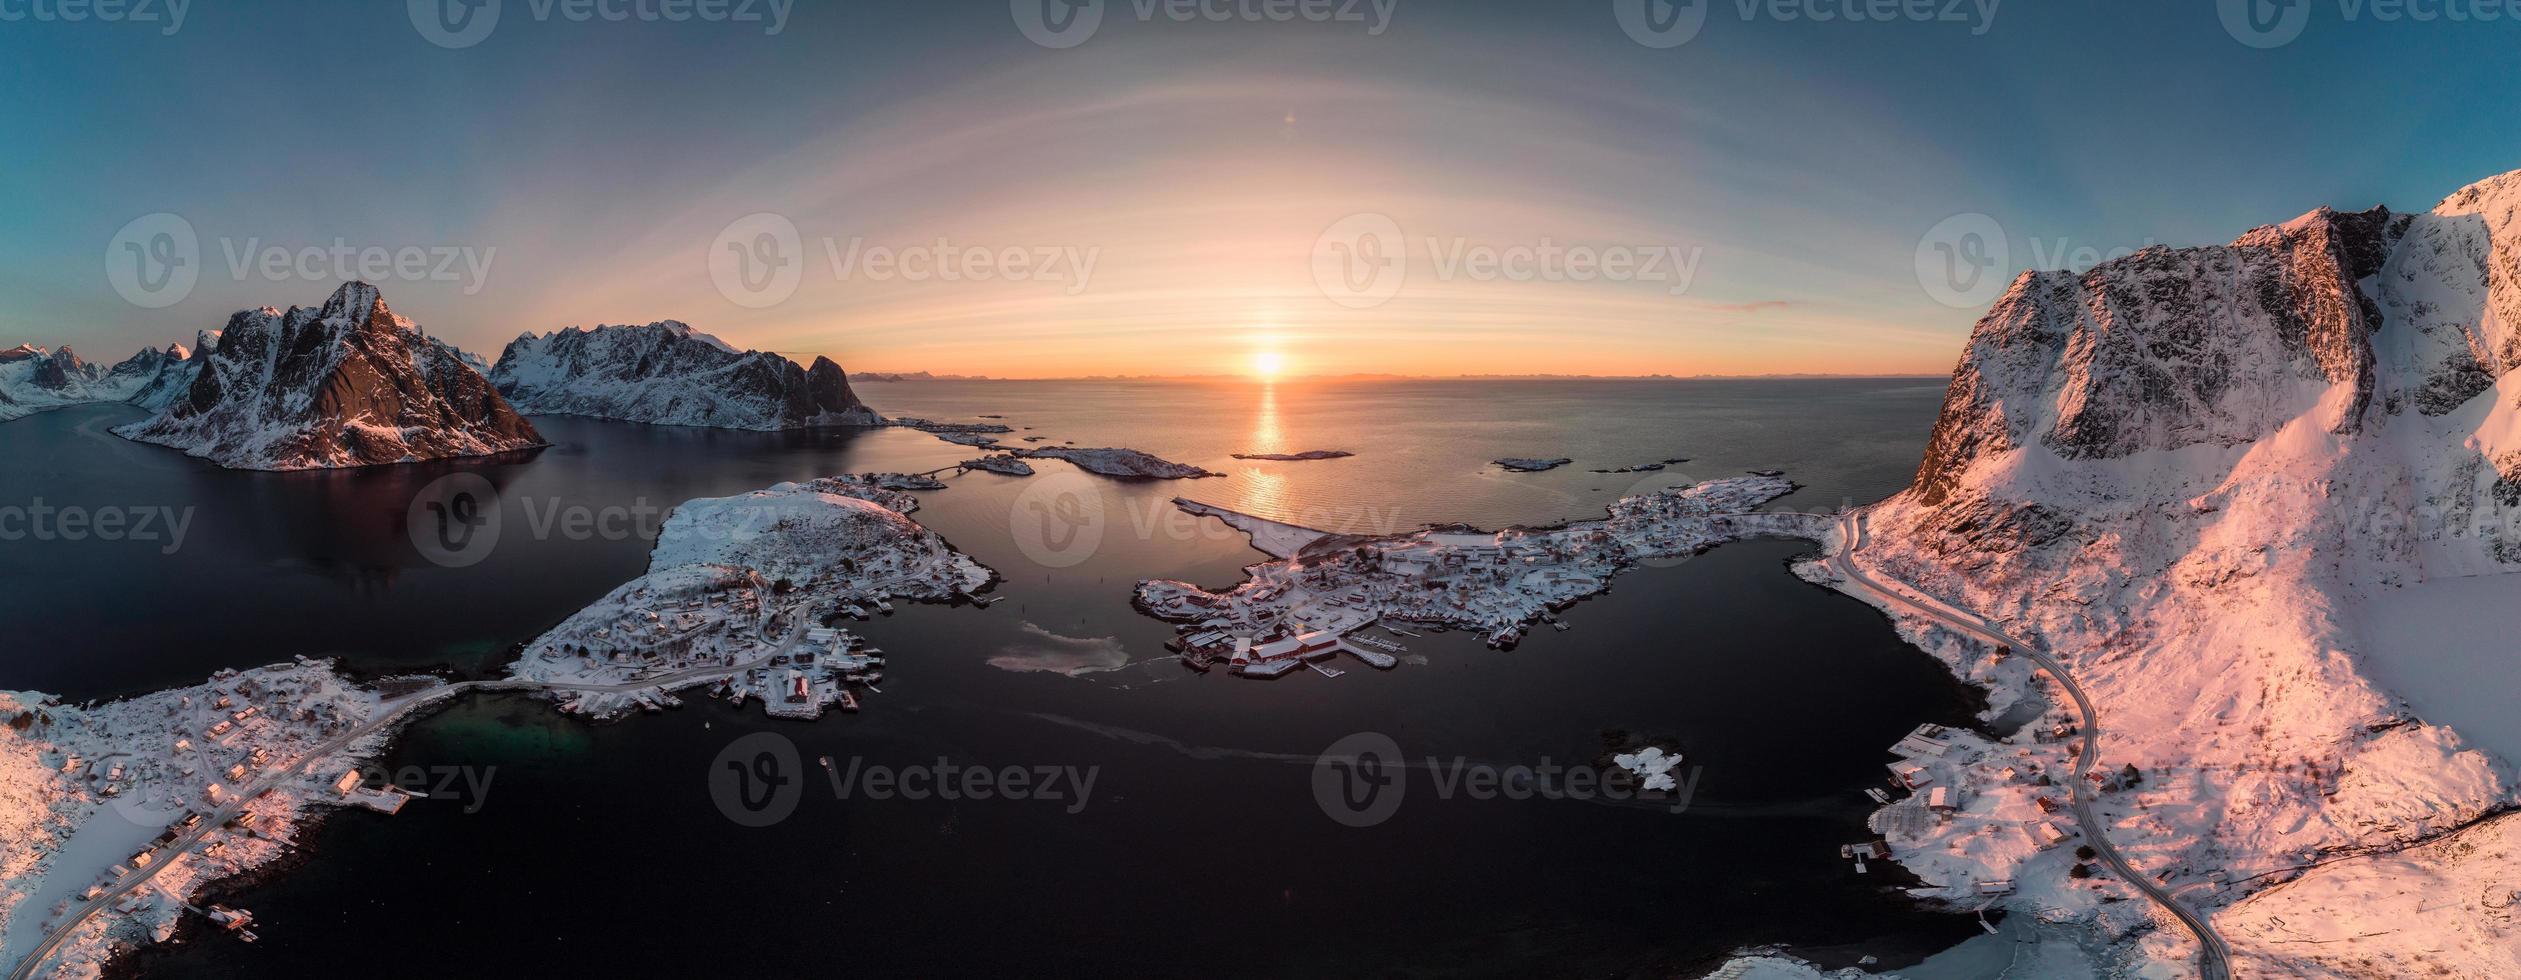 panorama luchtfoto van scandinavische archipel met berg aan de kust bij zonsopgang foto